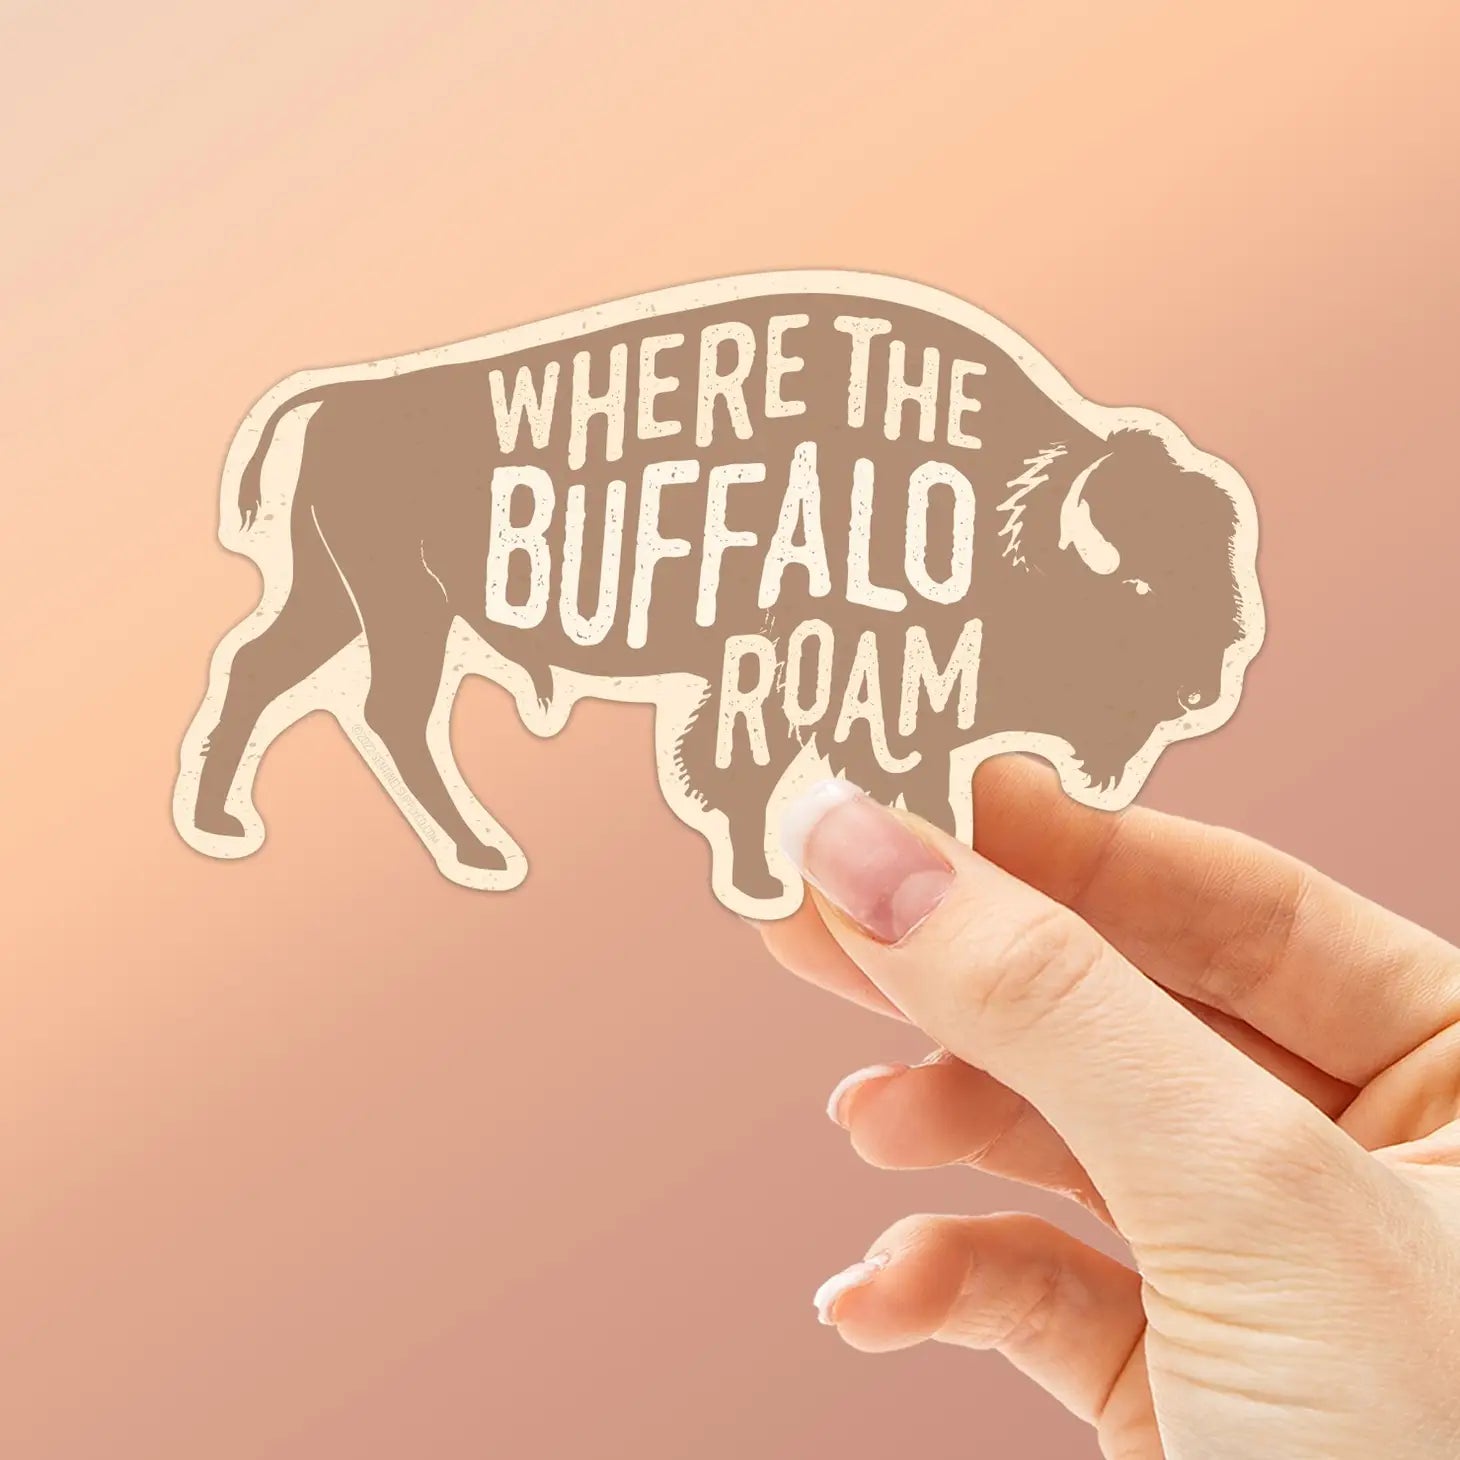 Buffalo Roam Sticker